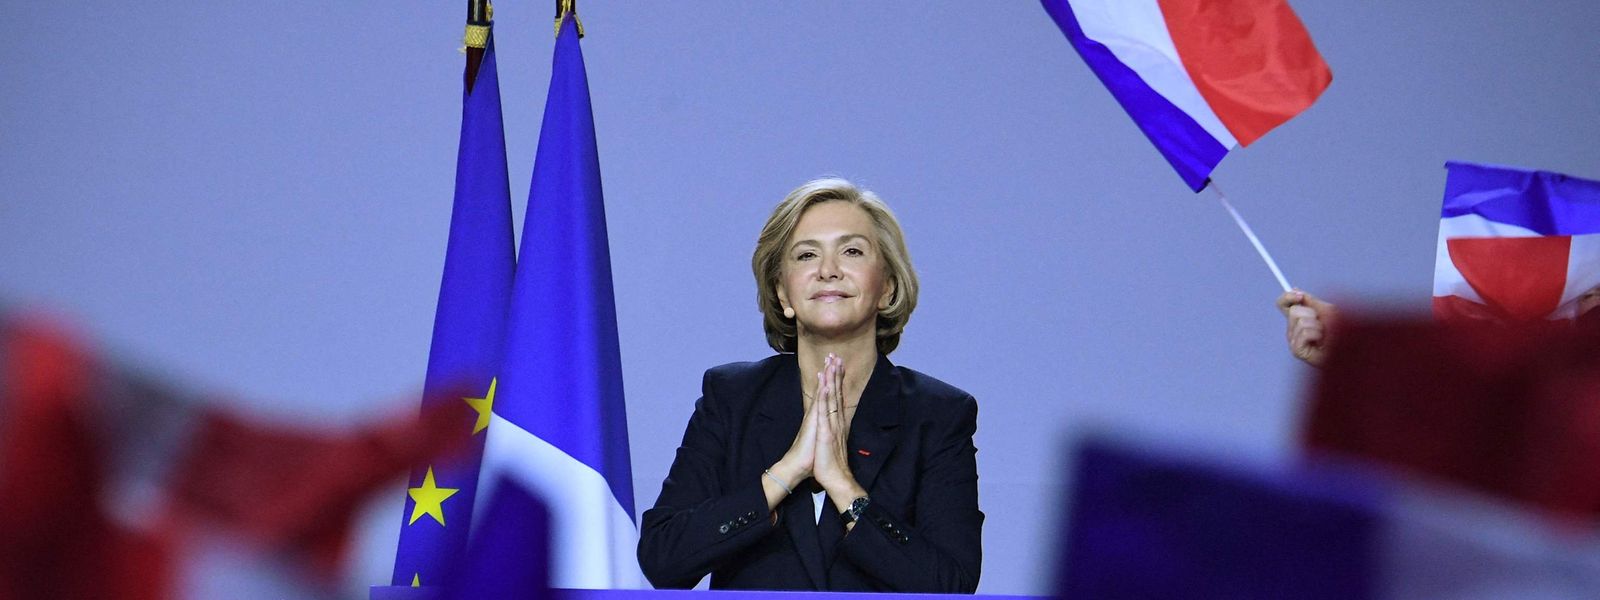 Valérie Pécresse se lance dans la course pour les conservateurs français.